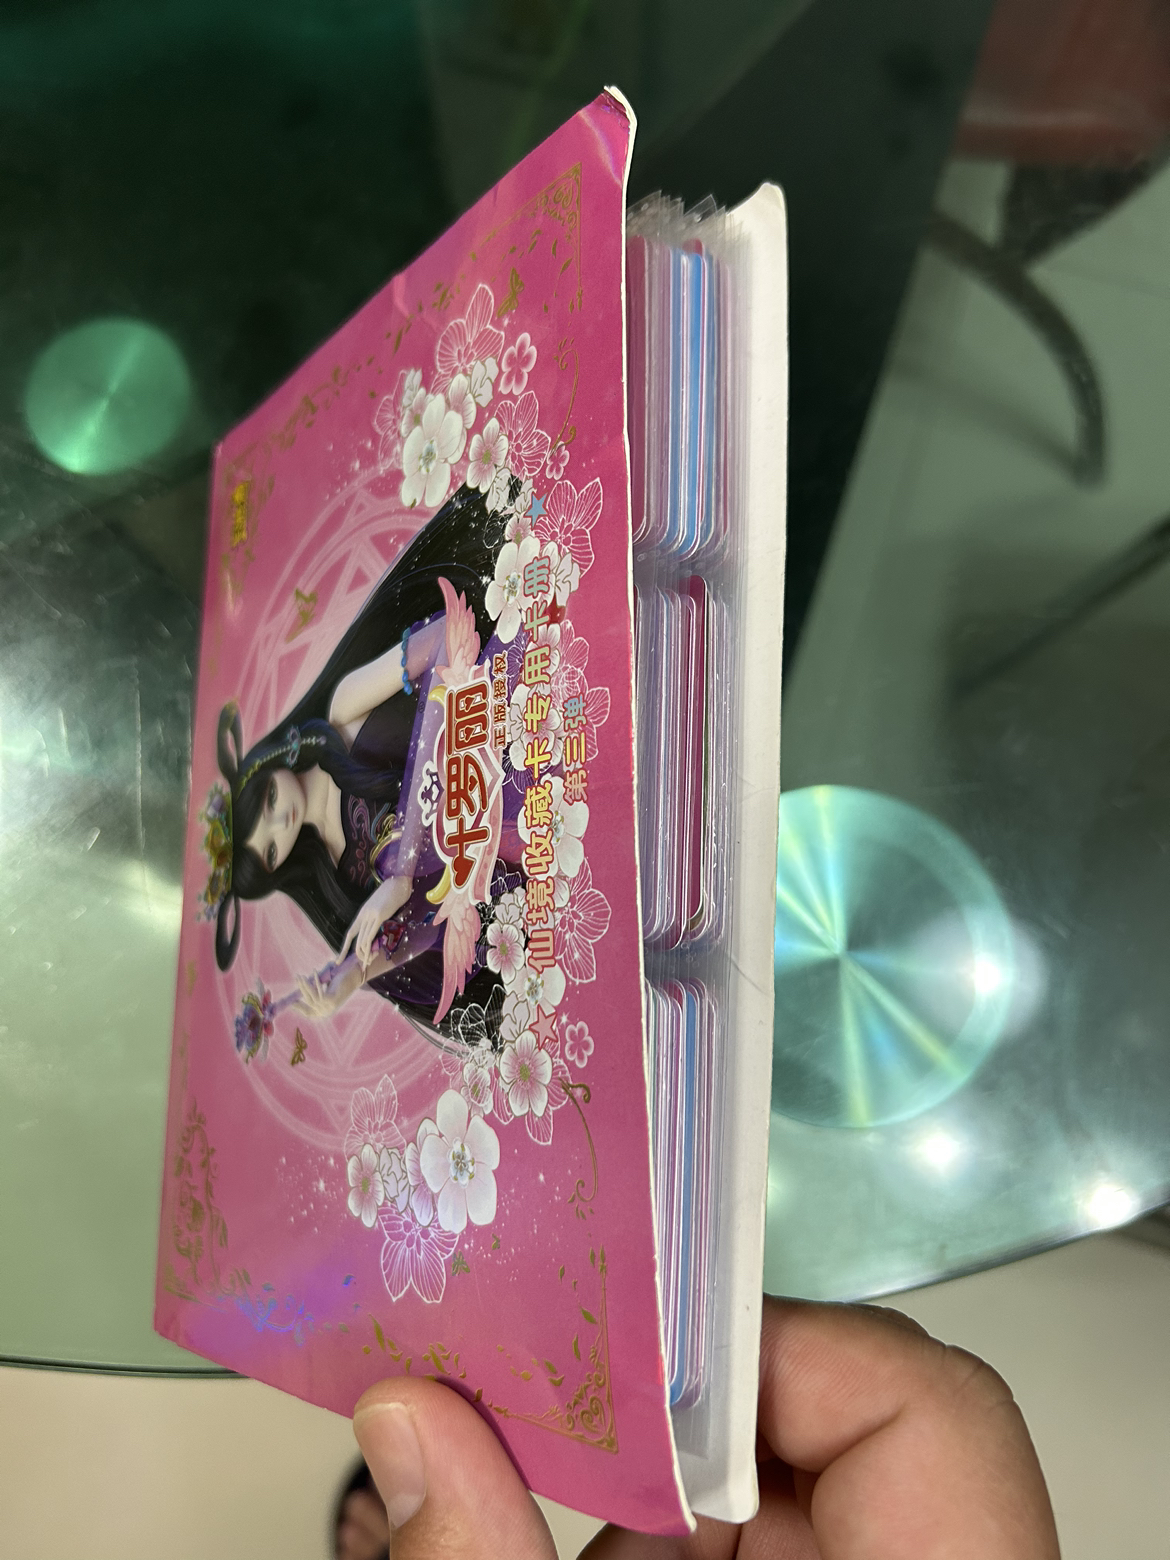 精灵梦叶罗丽卡片公主收藏卡册女孩玩具动漫游戏儿童卡牌全套 叶罗丽仙境魔法卡 20包 收藏册晒单图